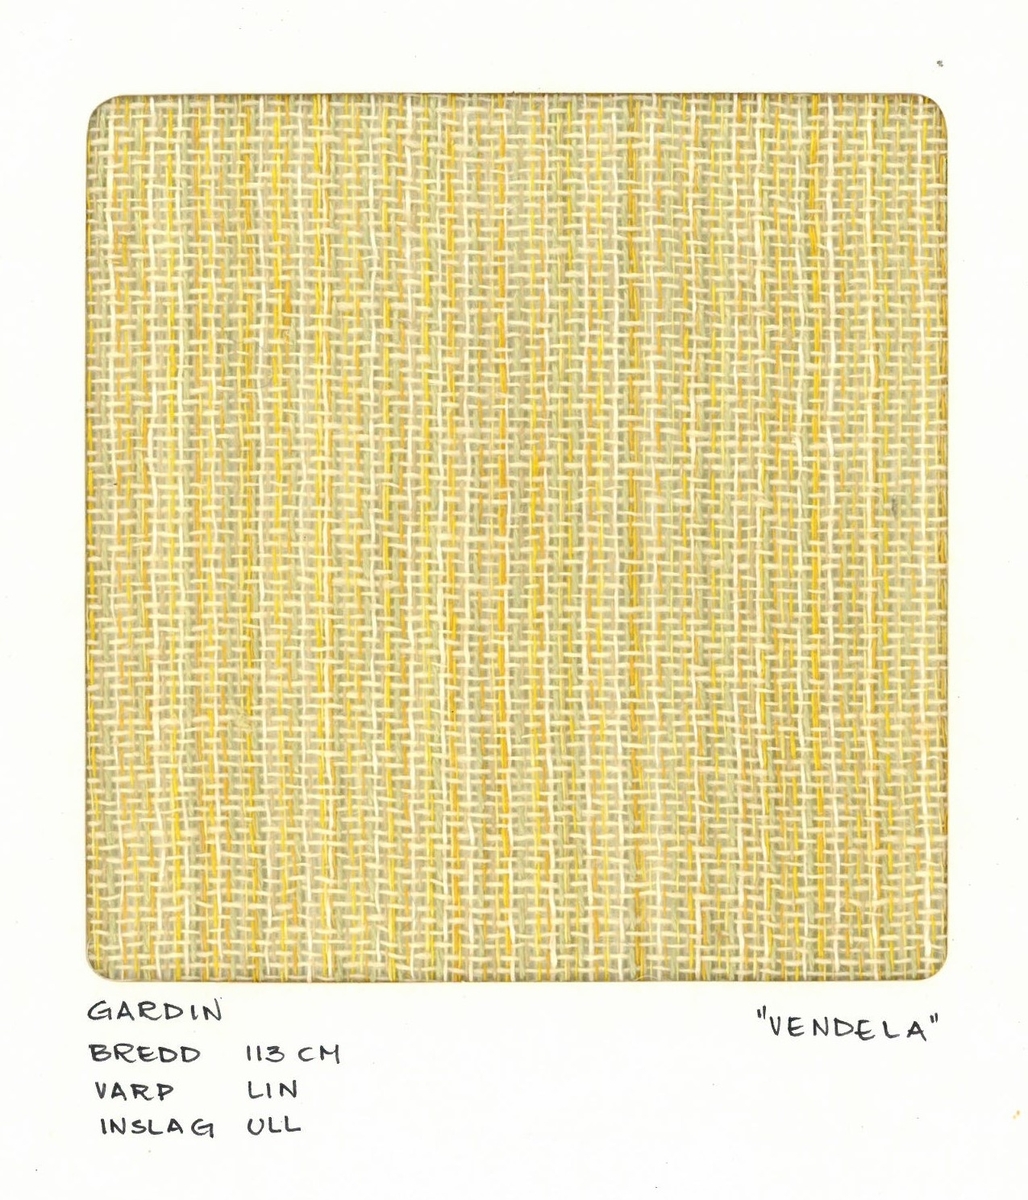 Pärm med vävprover till gardiner.
Gardin "Vendela" gul
Formgivare:
Kerstin Butler 1961-1969